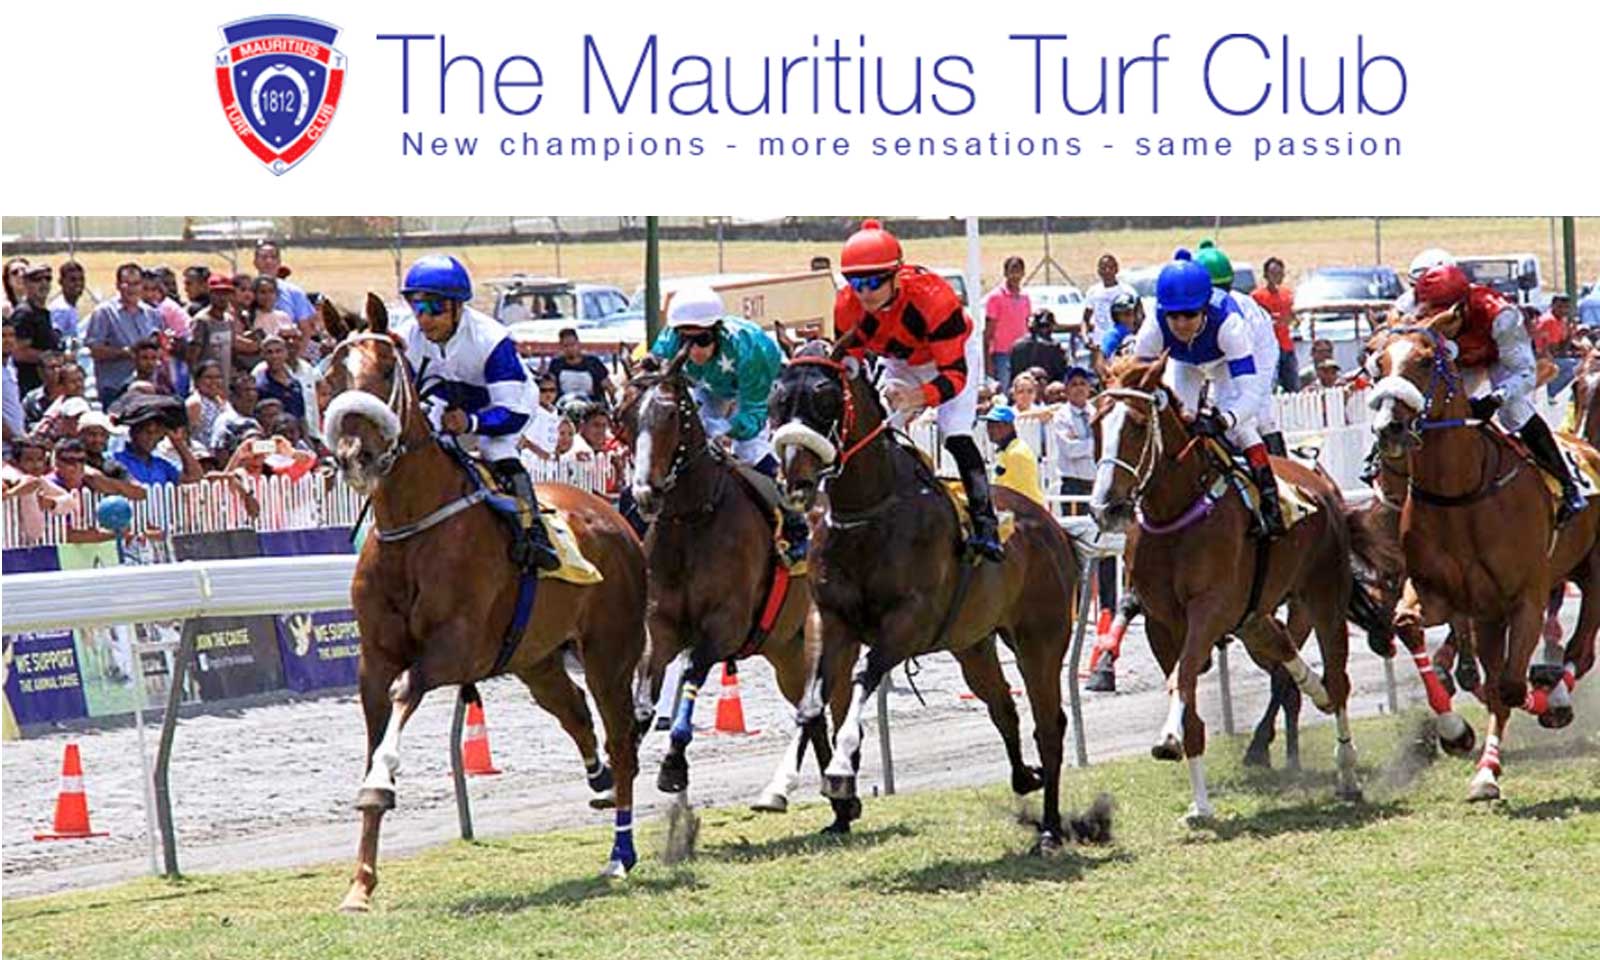 Mauritius Turf Club